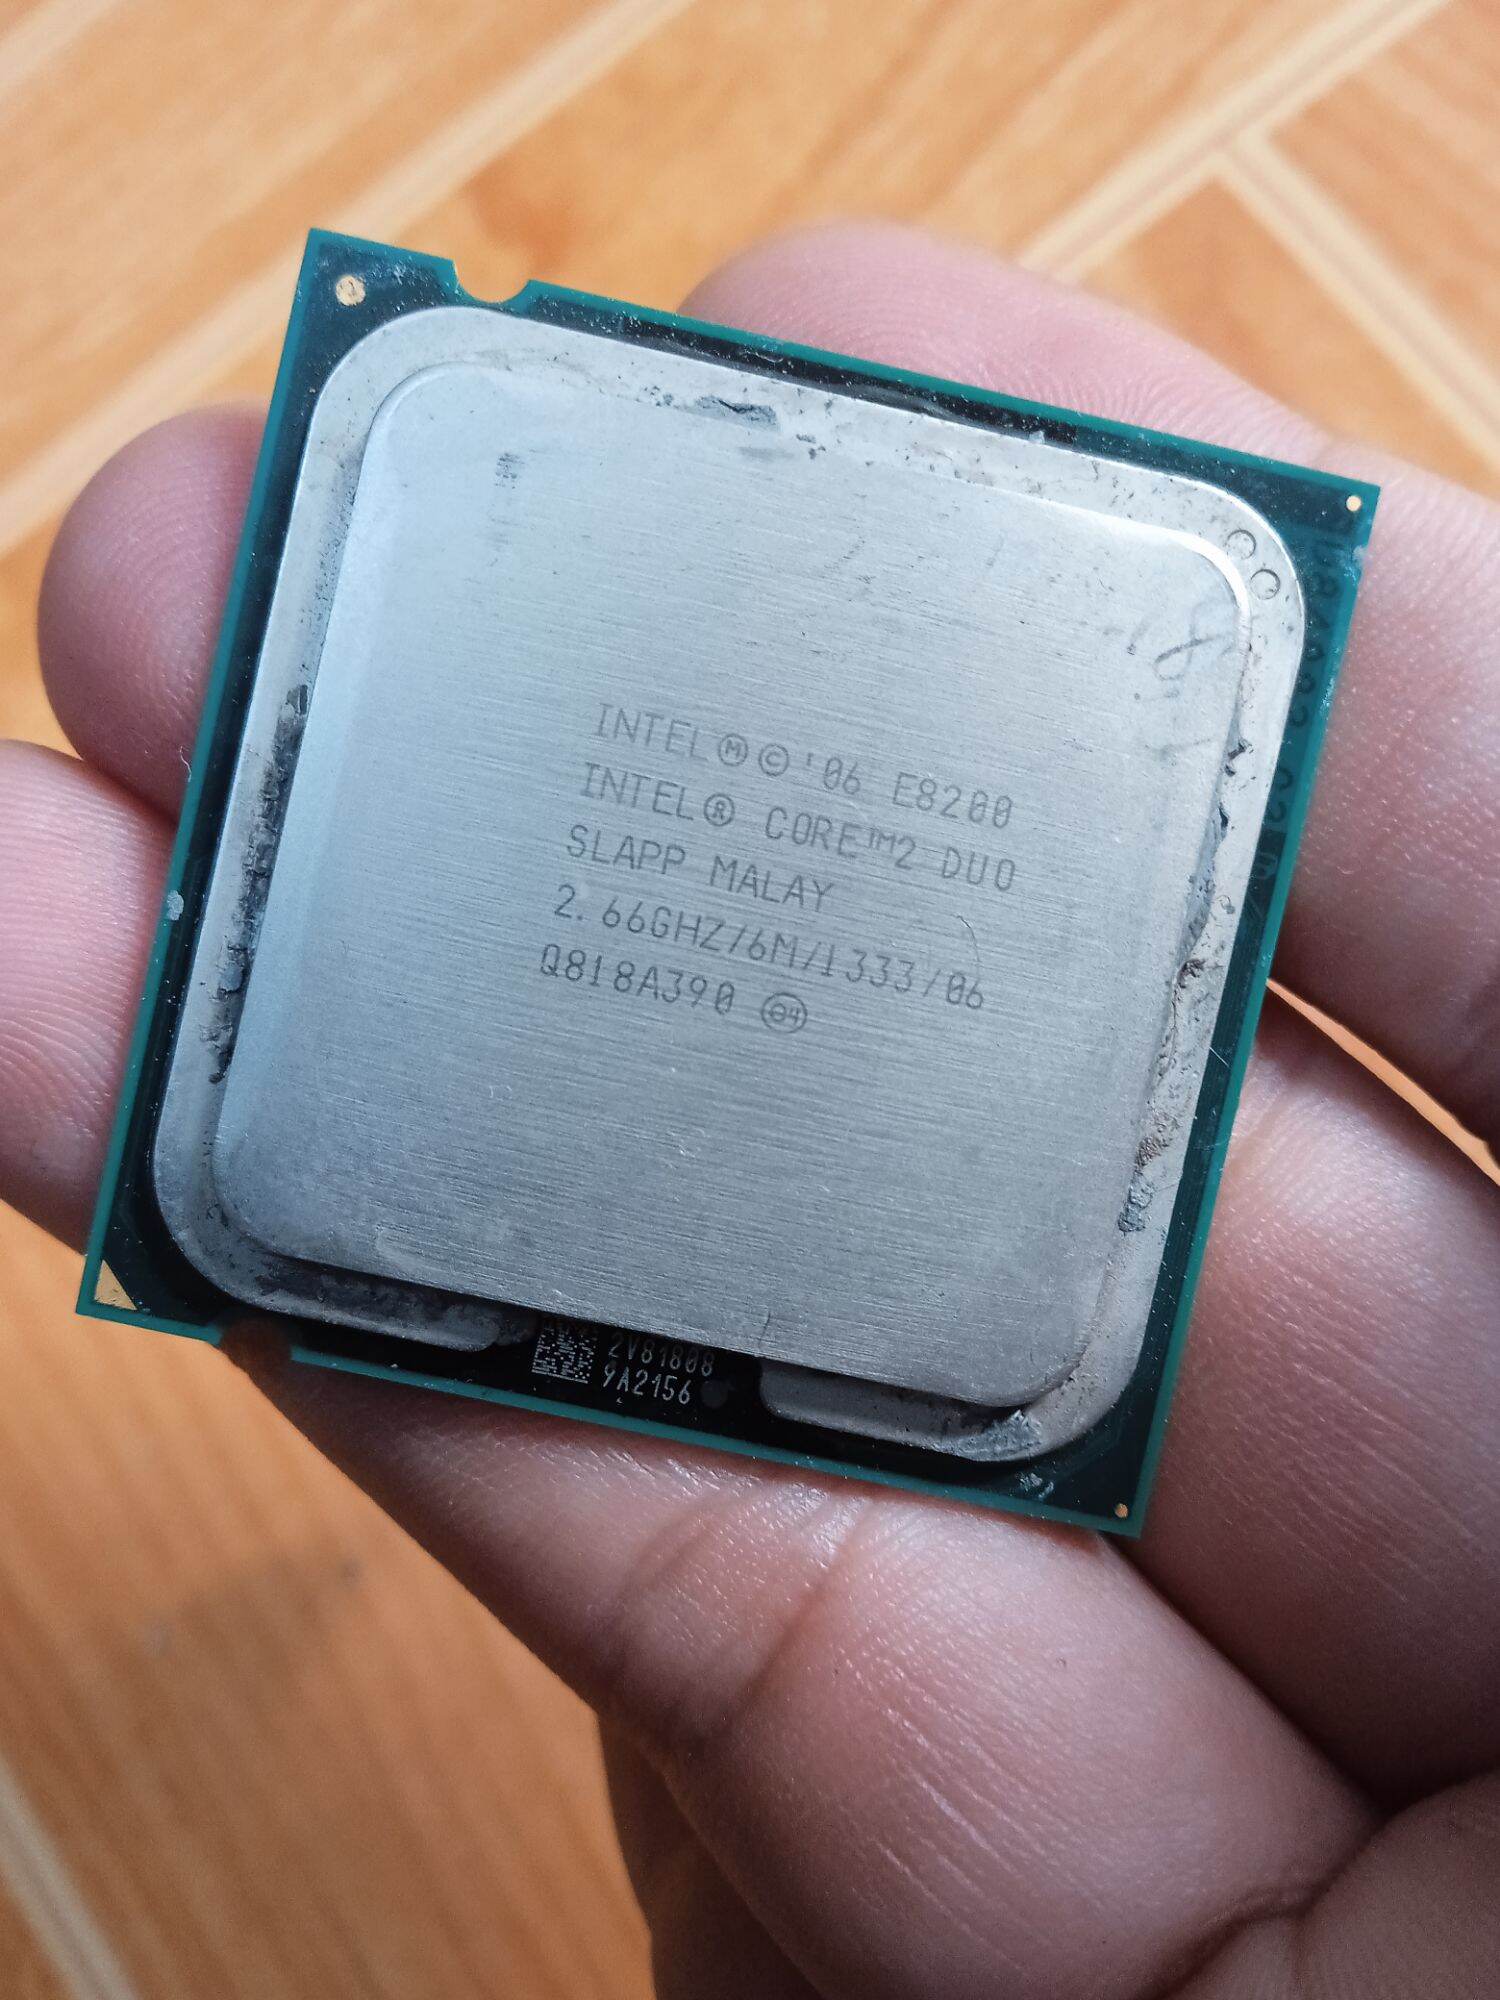 Bộ vi xử lý Intel Core 2 Dou E8200 (2.6Ghz) - sk 775